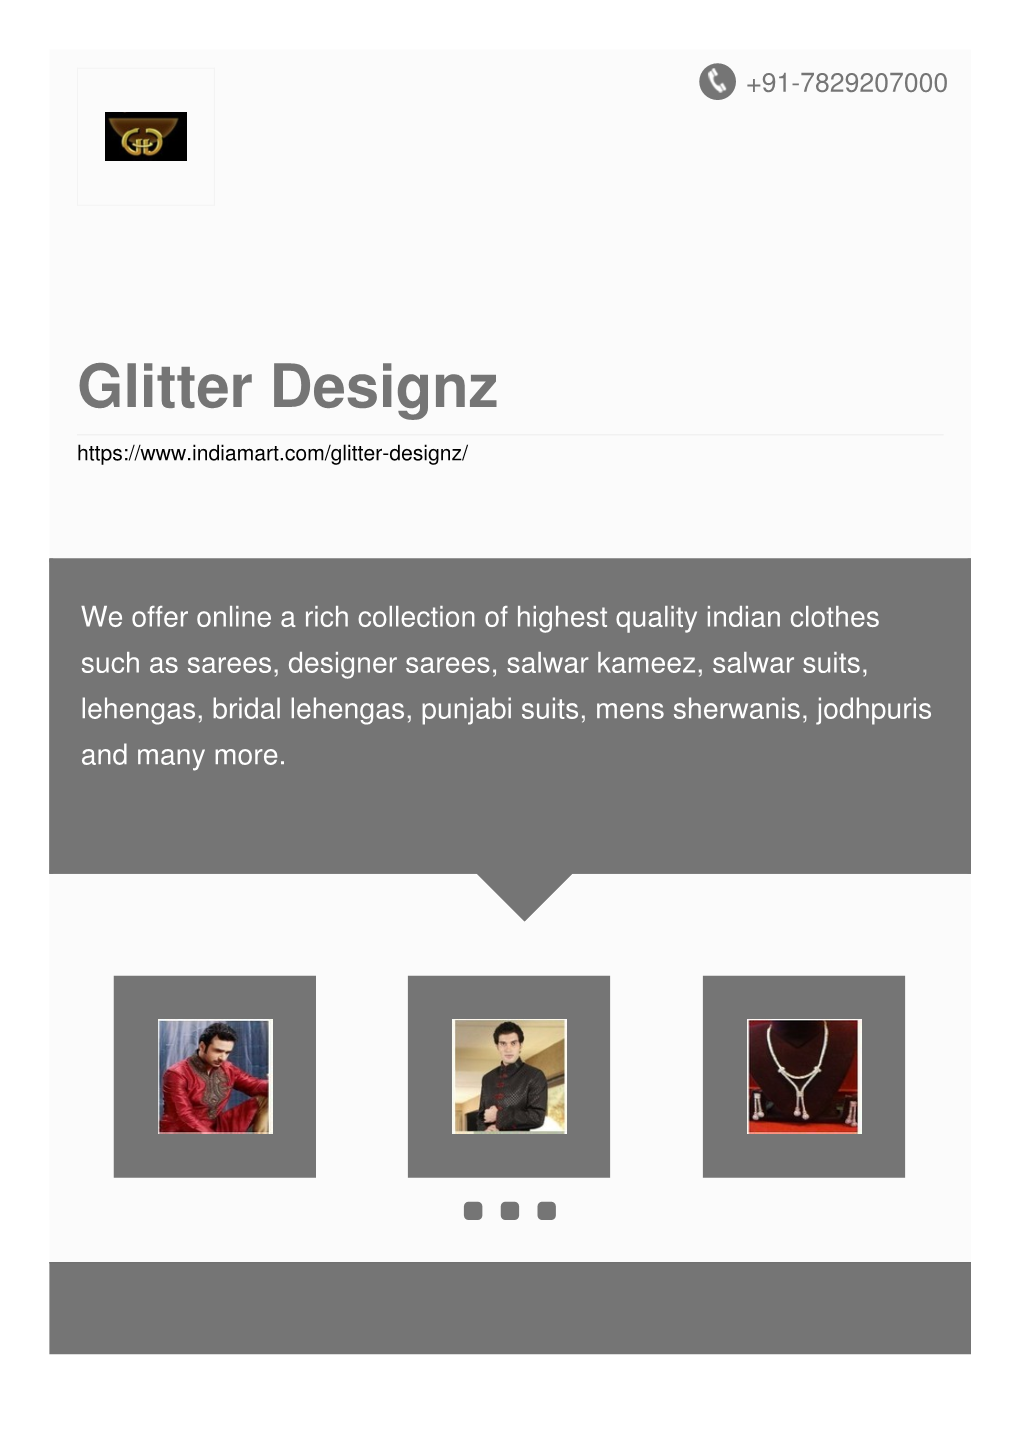 Glitter Designz